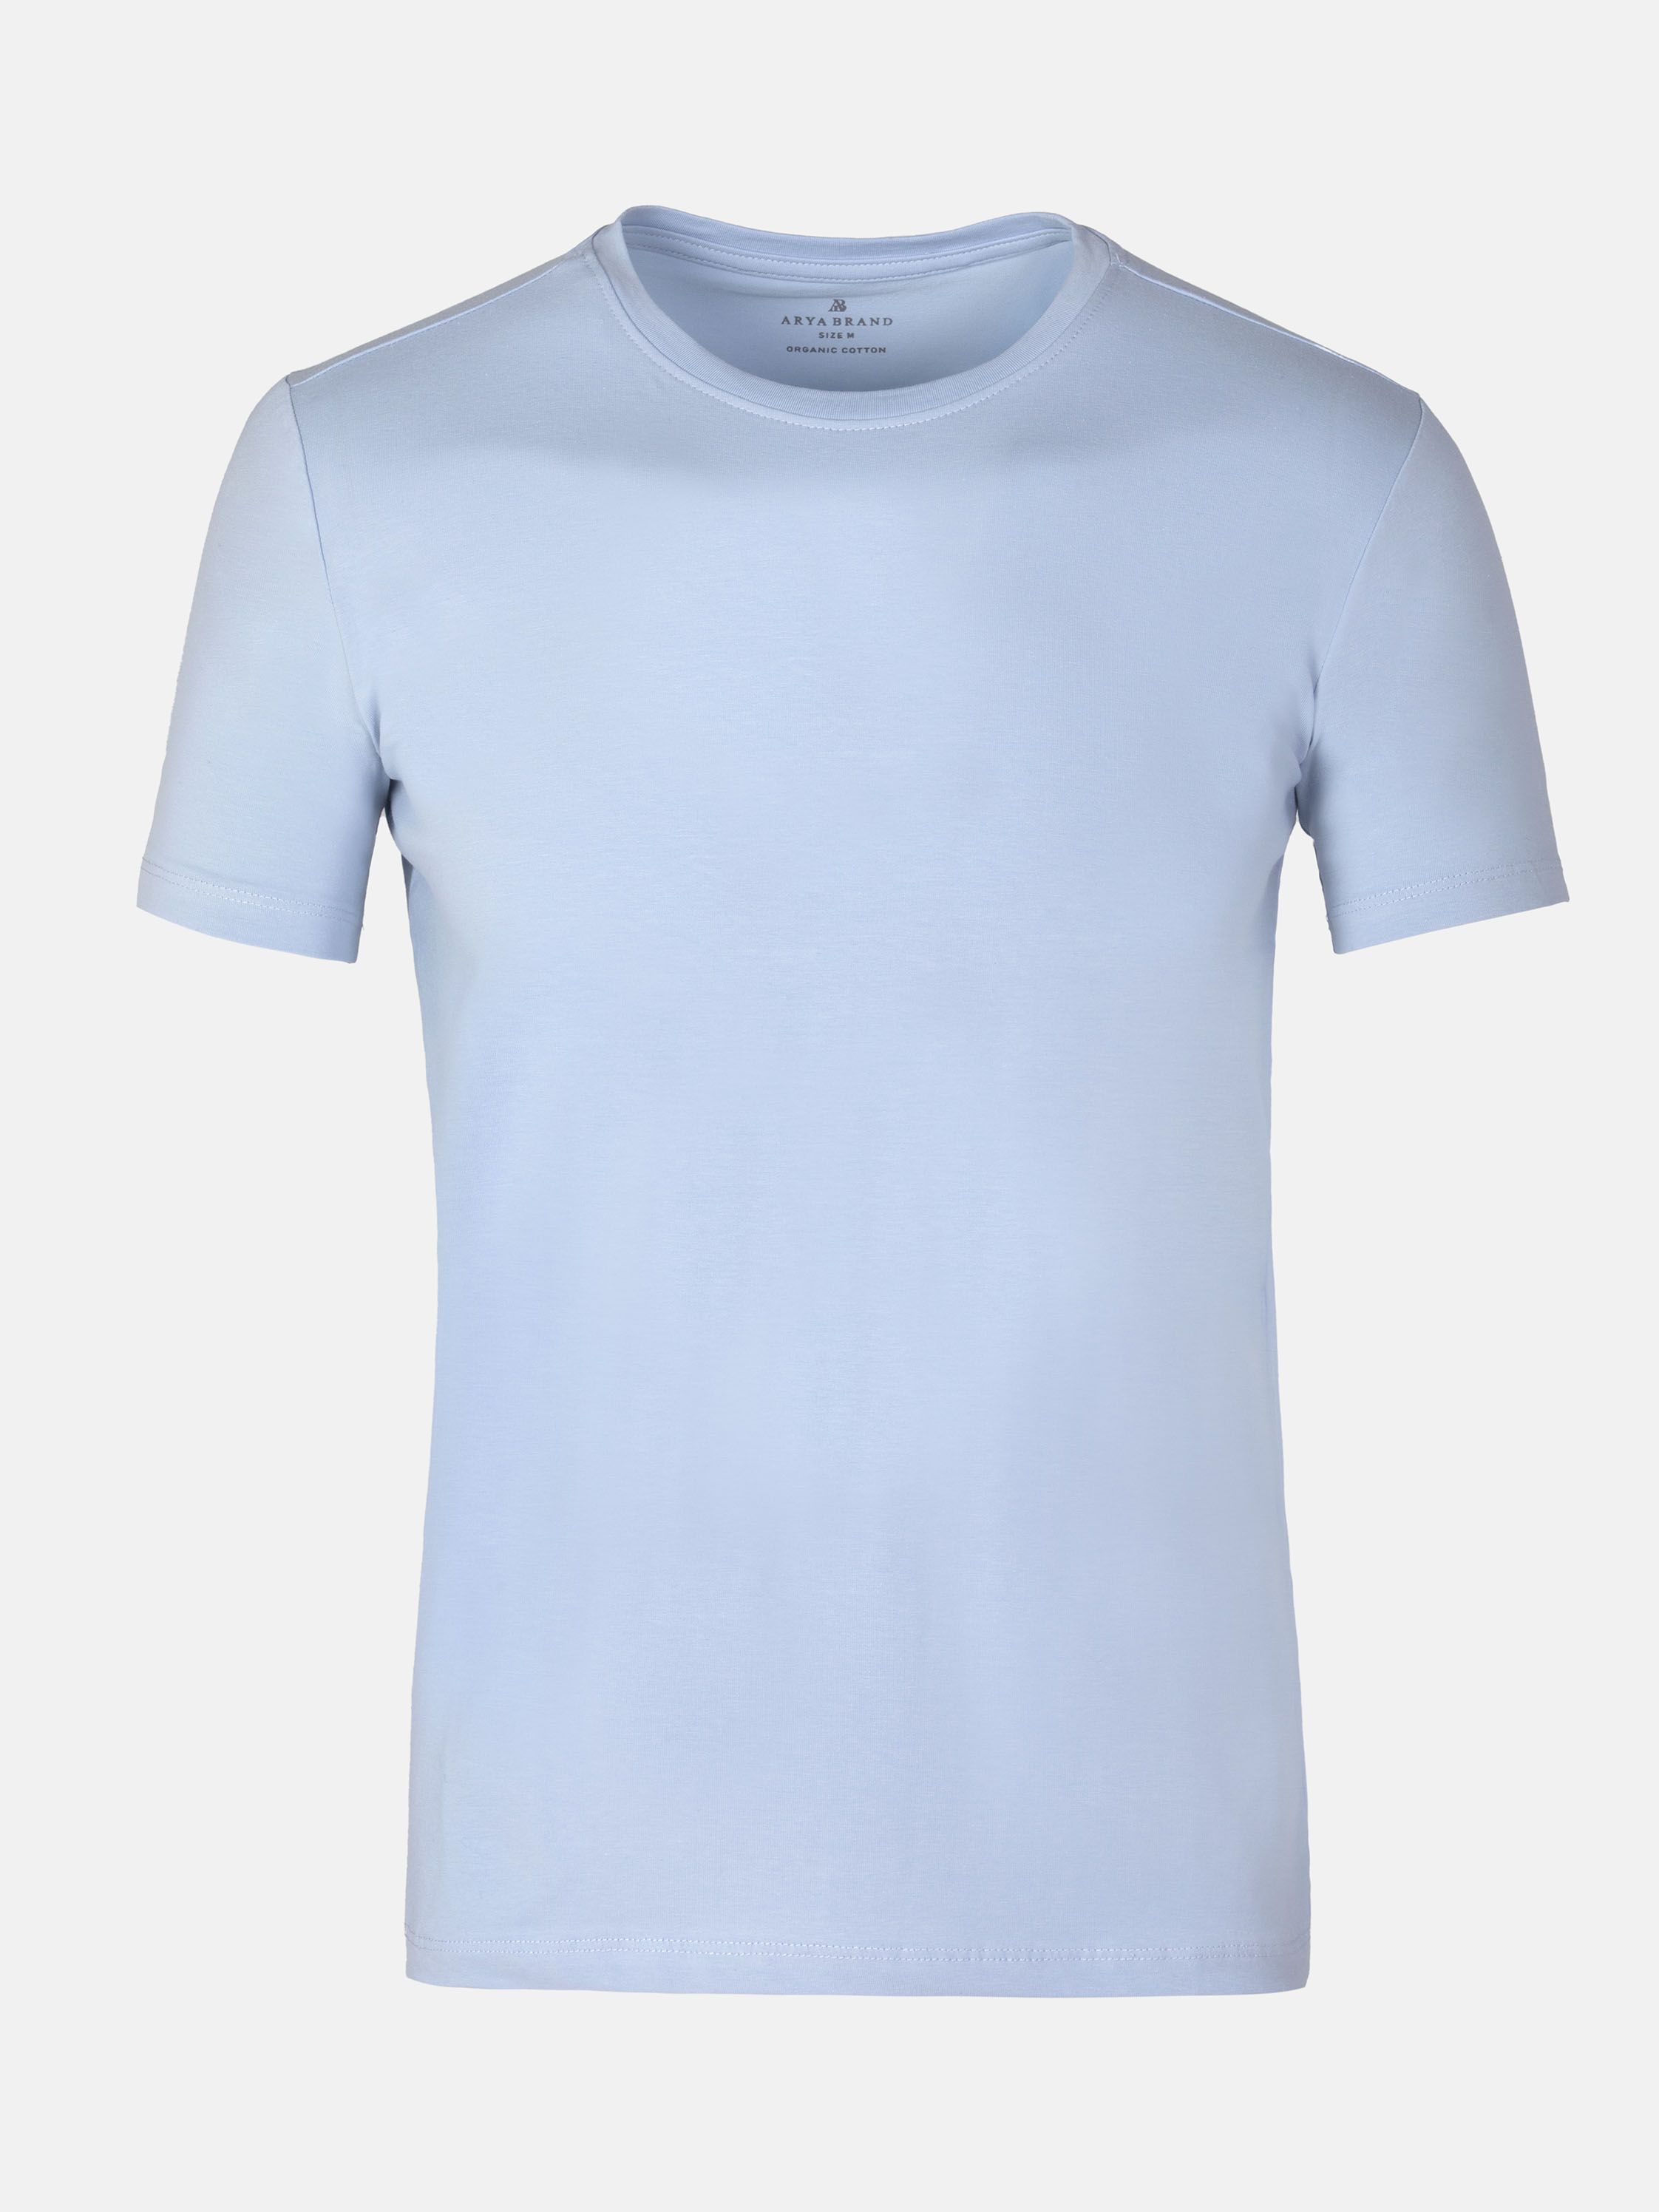 DENIM Tee Light Slim Cut Light Blue Shirt |WAM Fit - Blue Slim Sky T-Shirt - Blue Slim Fit